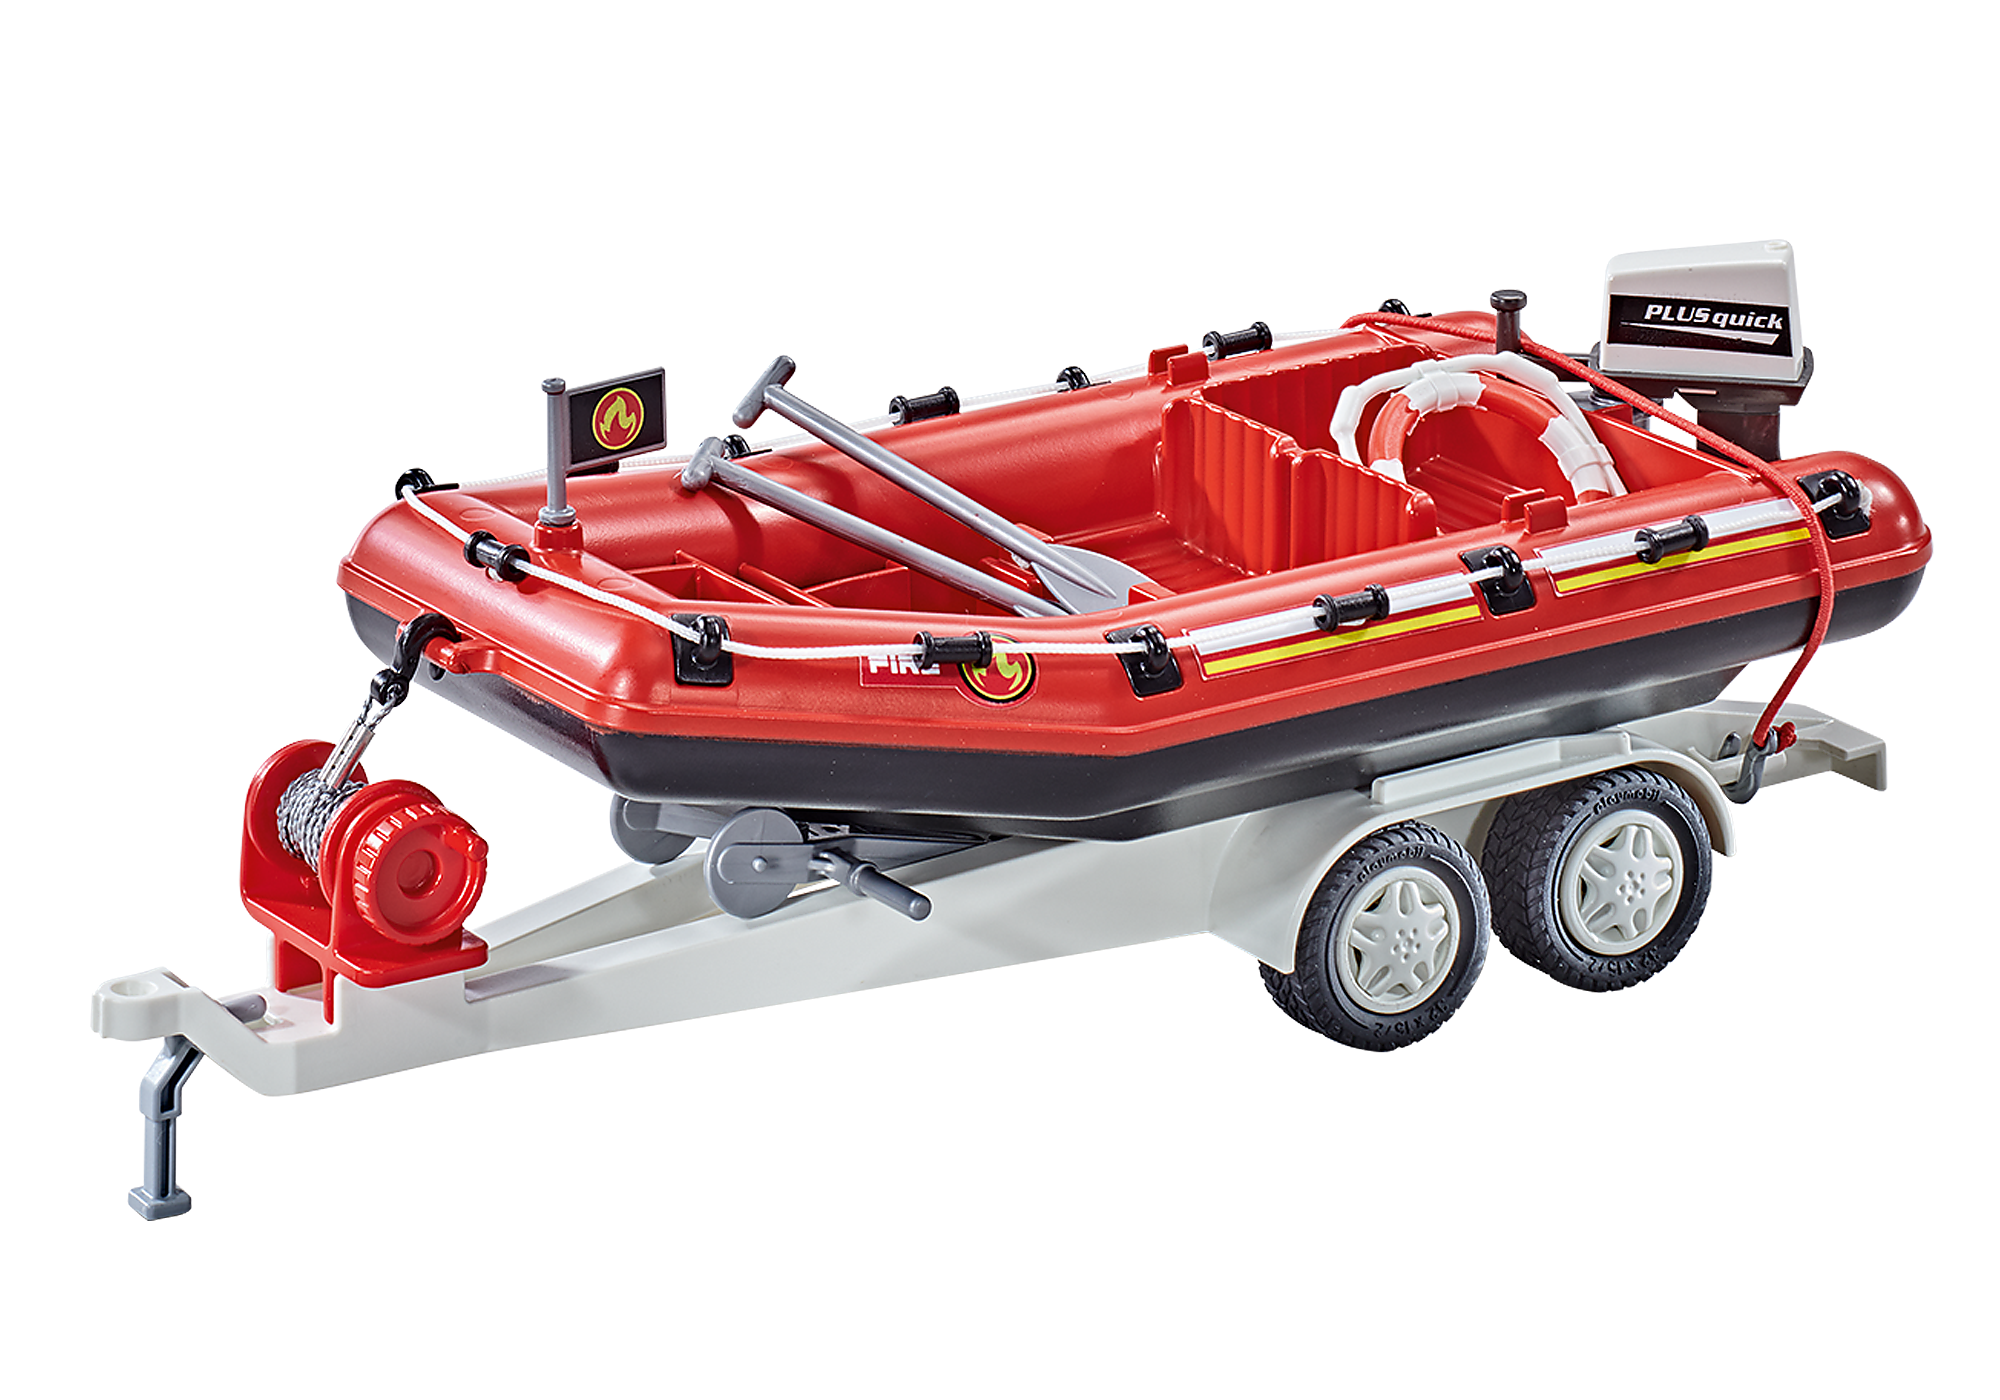 Playmobil 71144 SWAT Polizei Geländefahrzeug + Polizeiboot in Pankow -  Prenzlauer Berg, Playmobil günstig kaufen, gebraucht oder neu